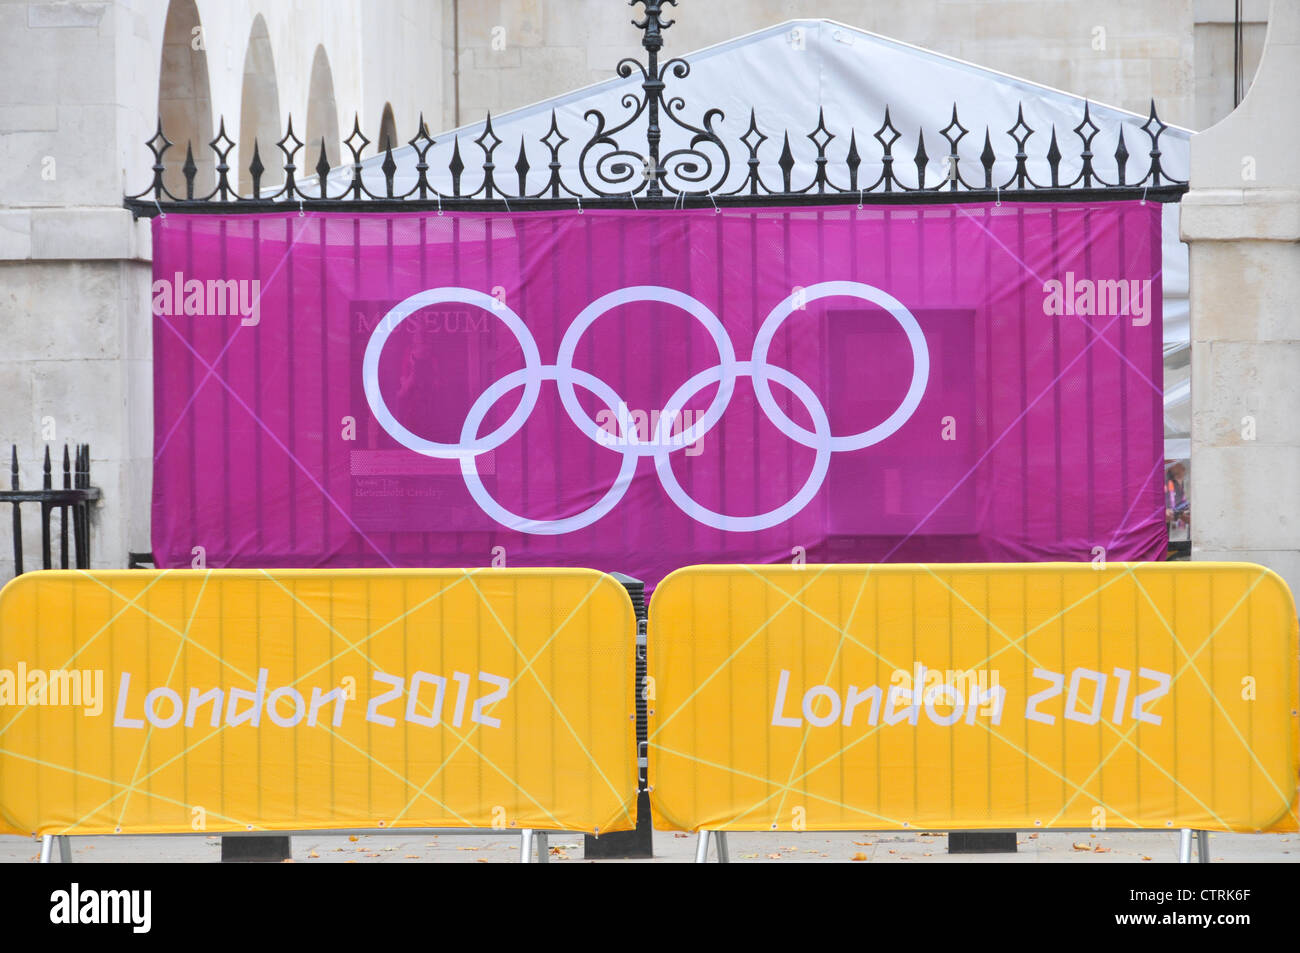 Les symboles des Jeux Olympiques de Londres 2012 typeface Anneaux olympiques Banque D'Images